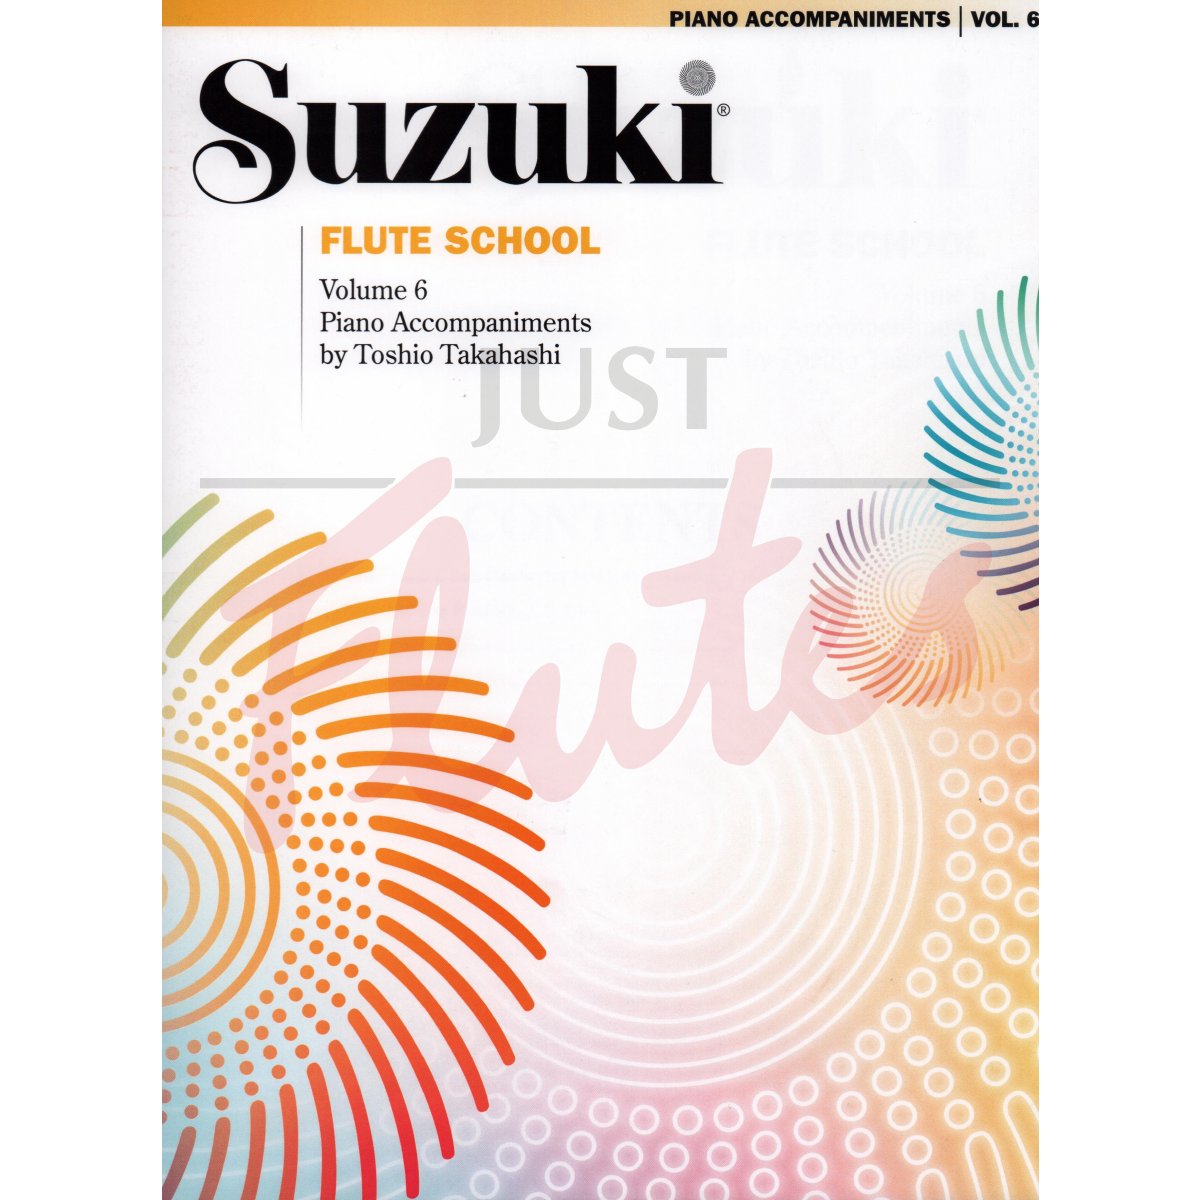 Suzuki Flute School Vol 6 (Revised Edition) [Piano Accompaniment]